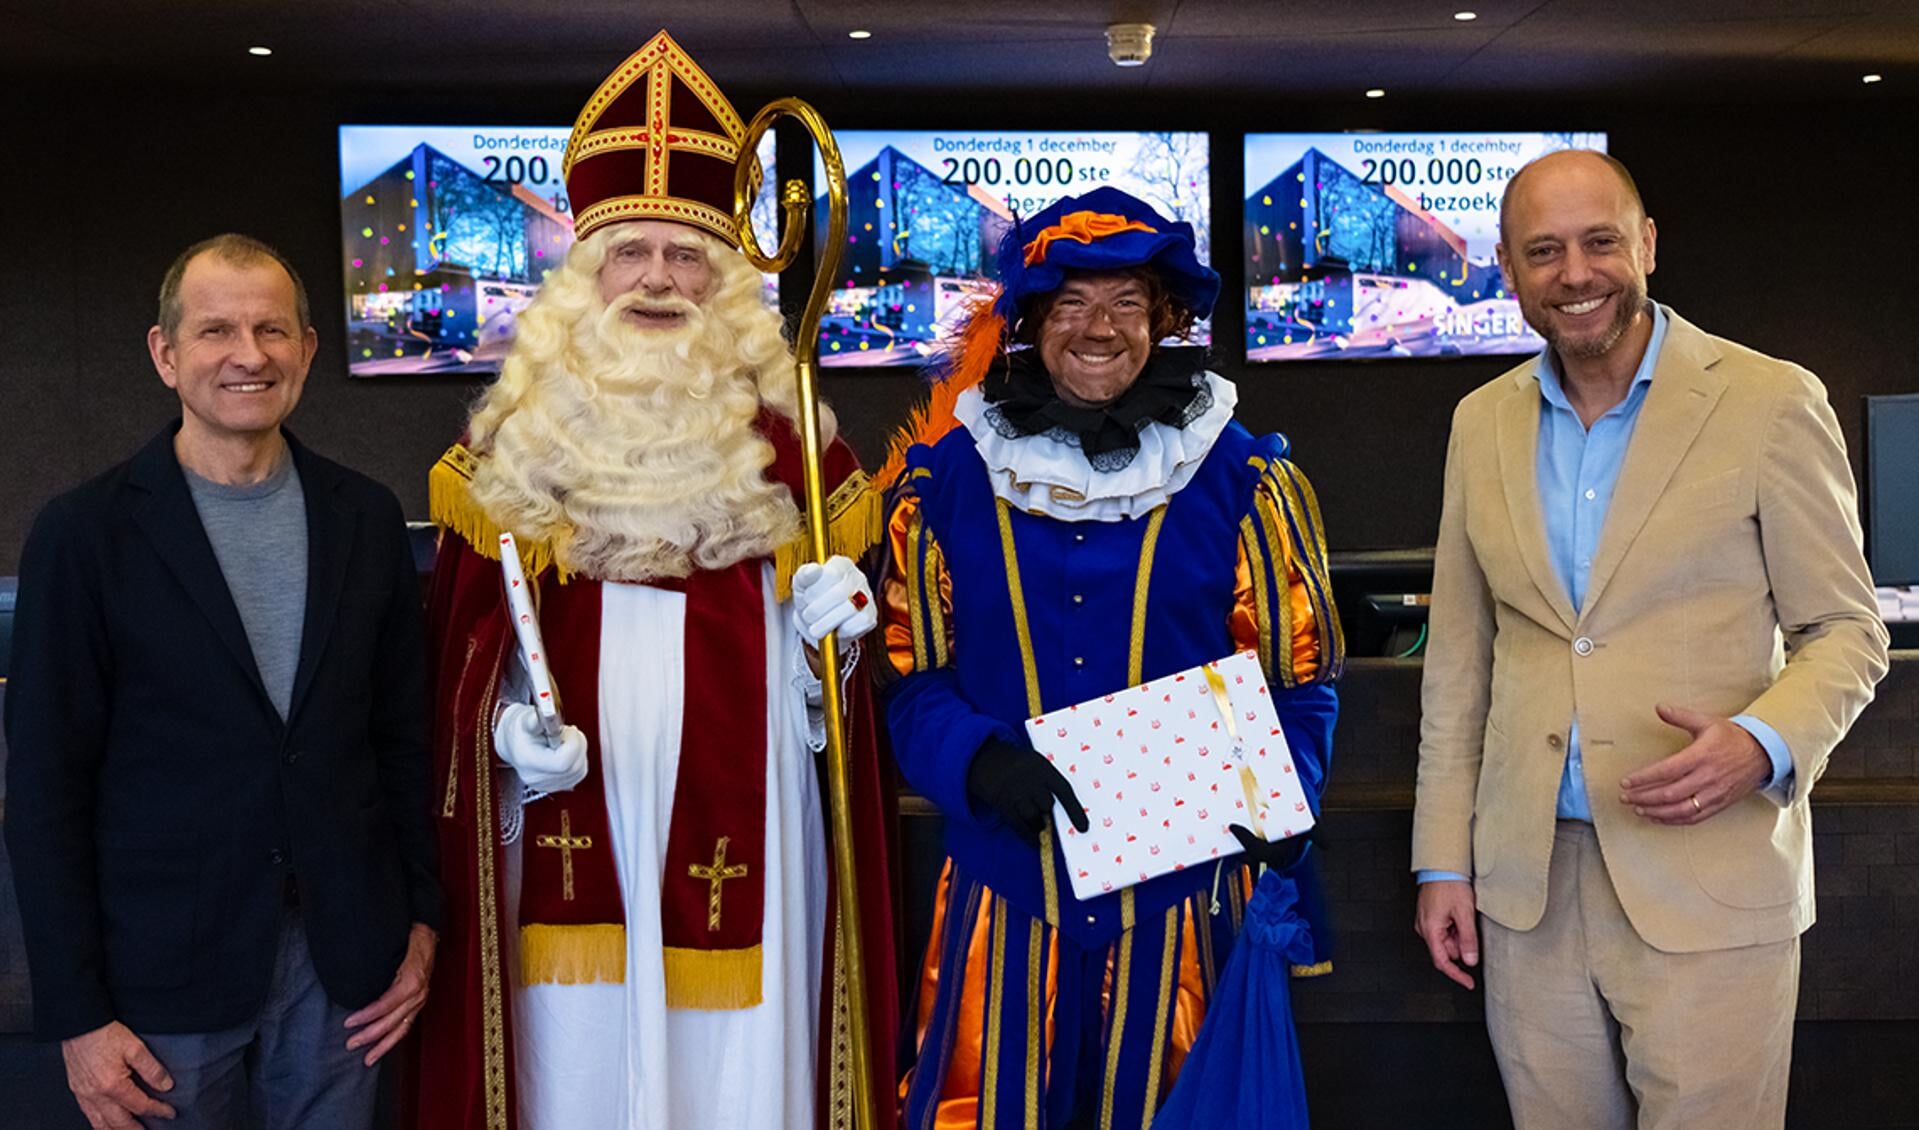 Sinterklaas was de 200.000ste bezoeker.